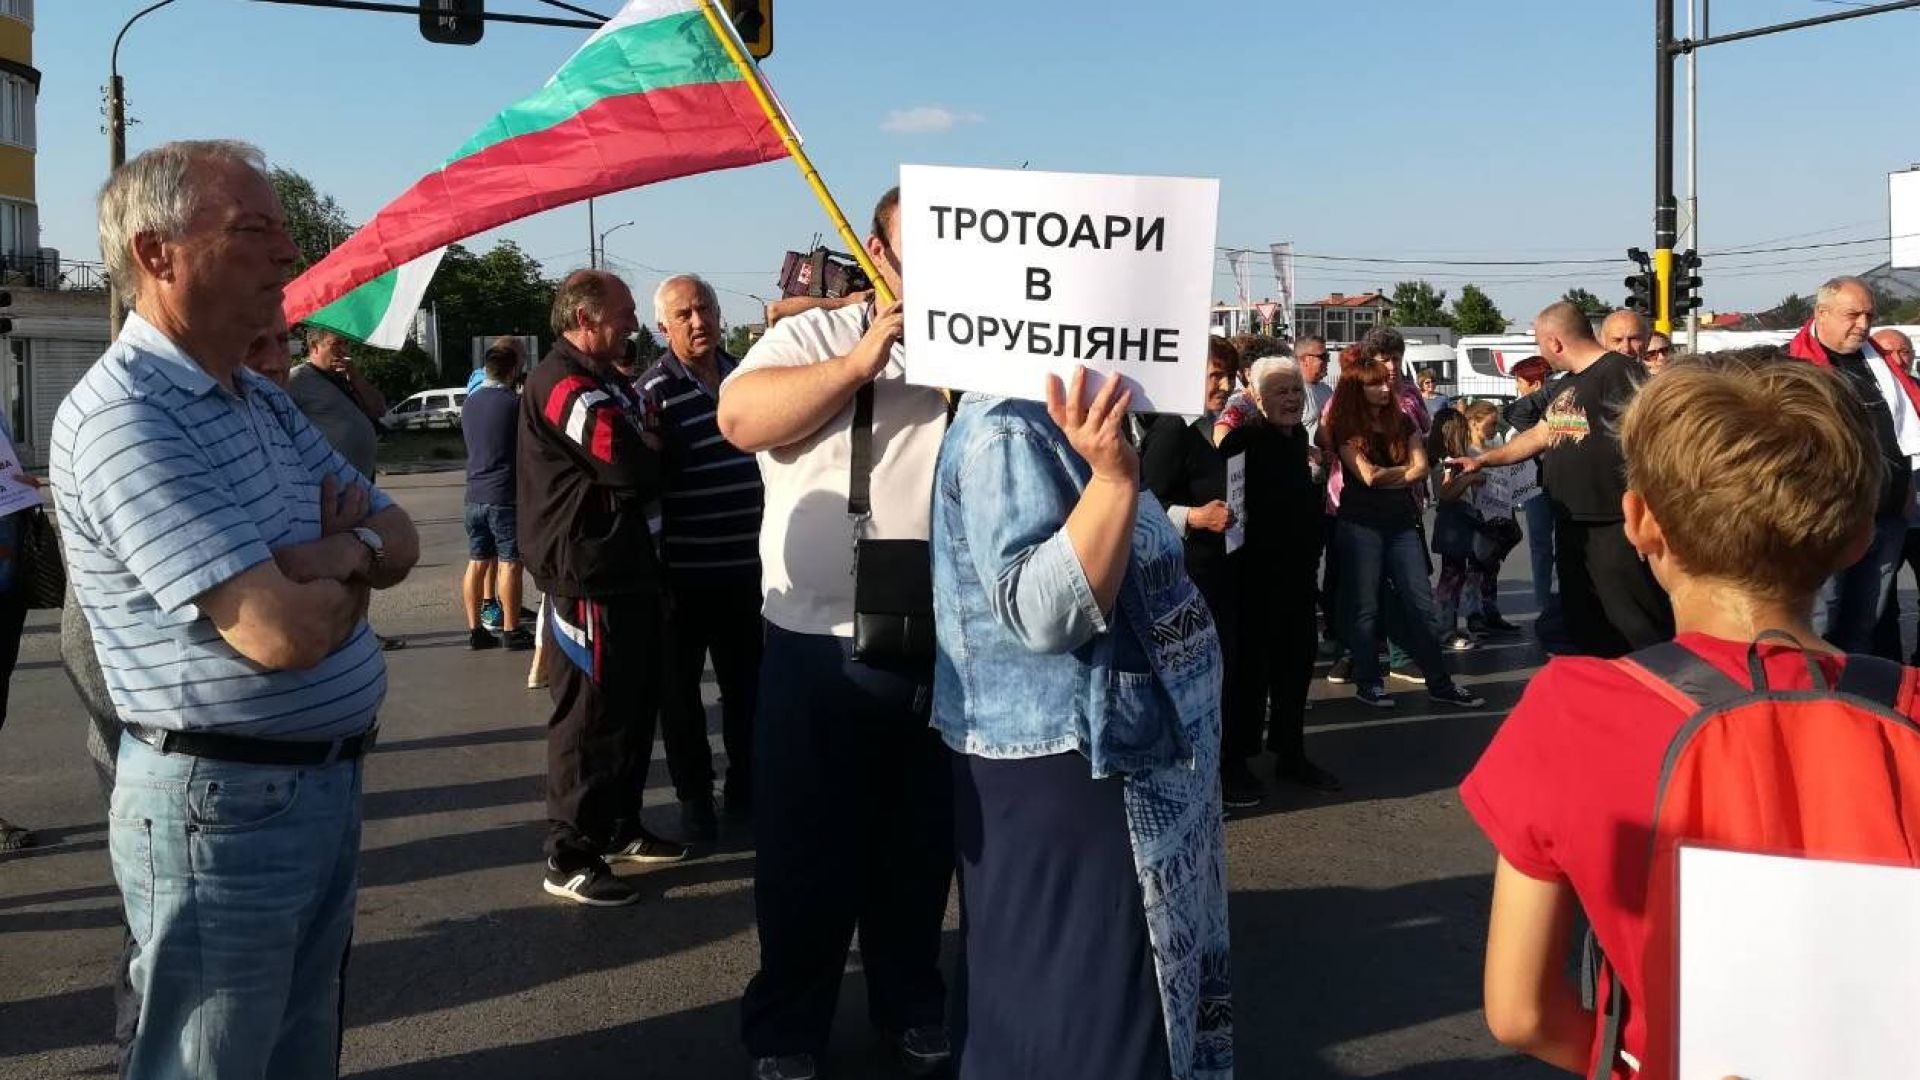 Демонстранти блокираха „Цариградско шосе“ в София при „Горубляне“ 